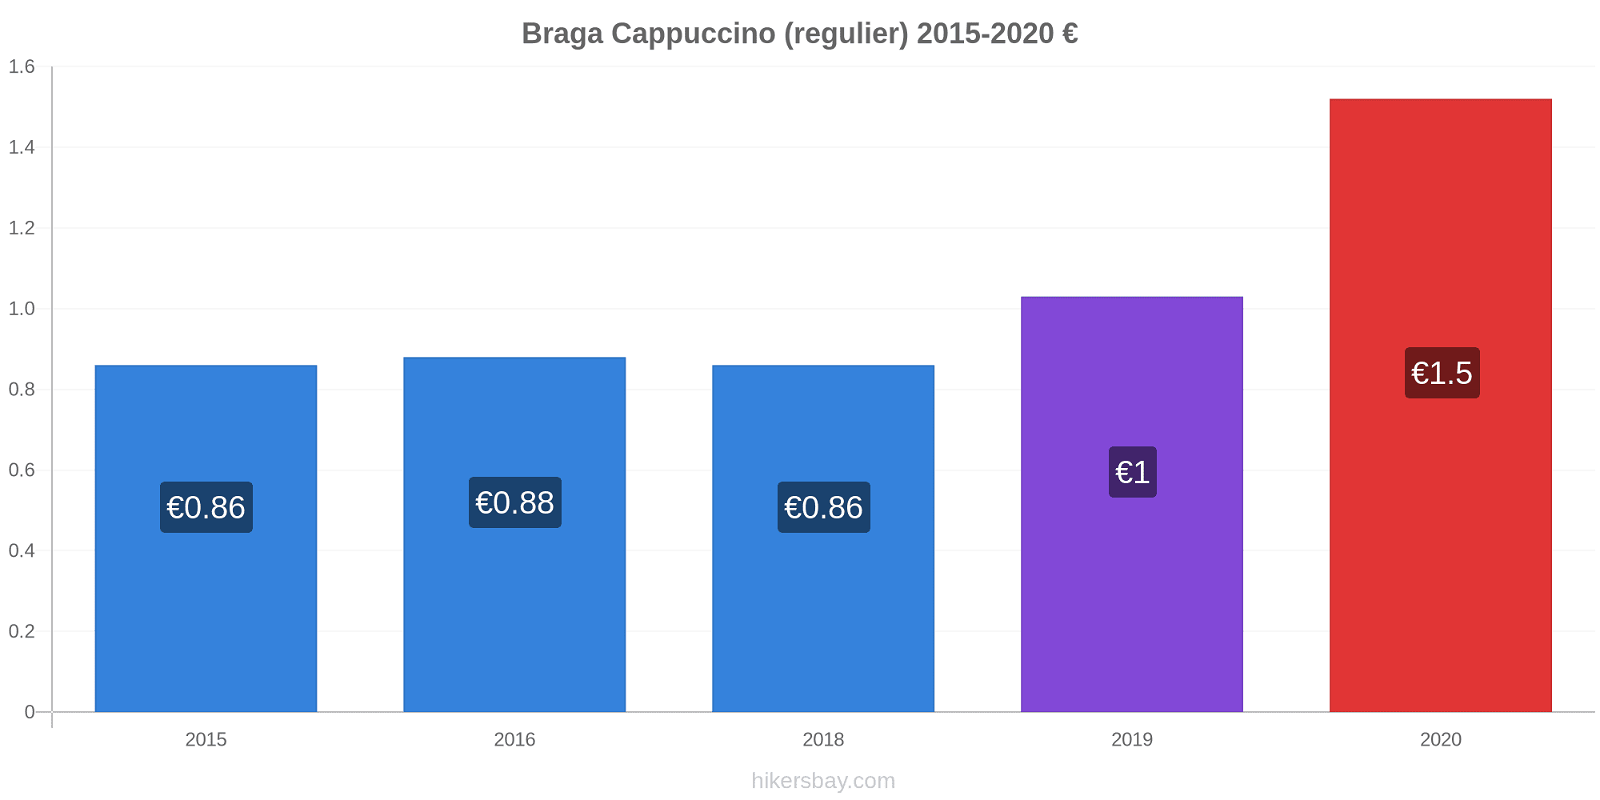 Braga prijswijzigingen Cappuccino (regelmatige) hikersbay.com